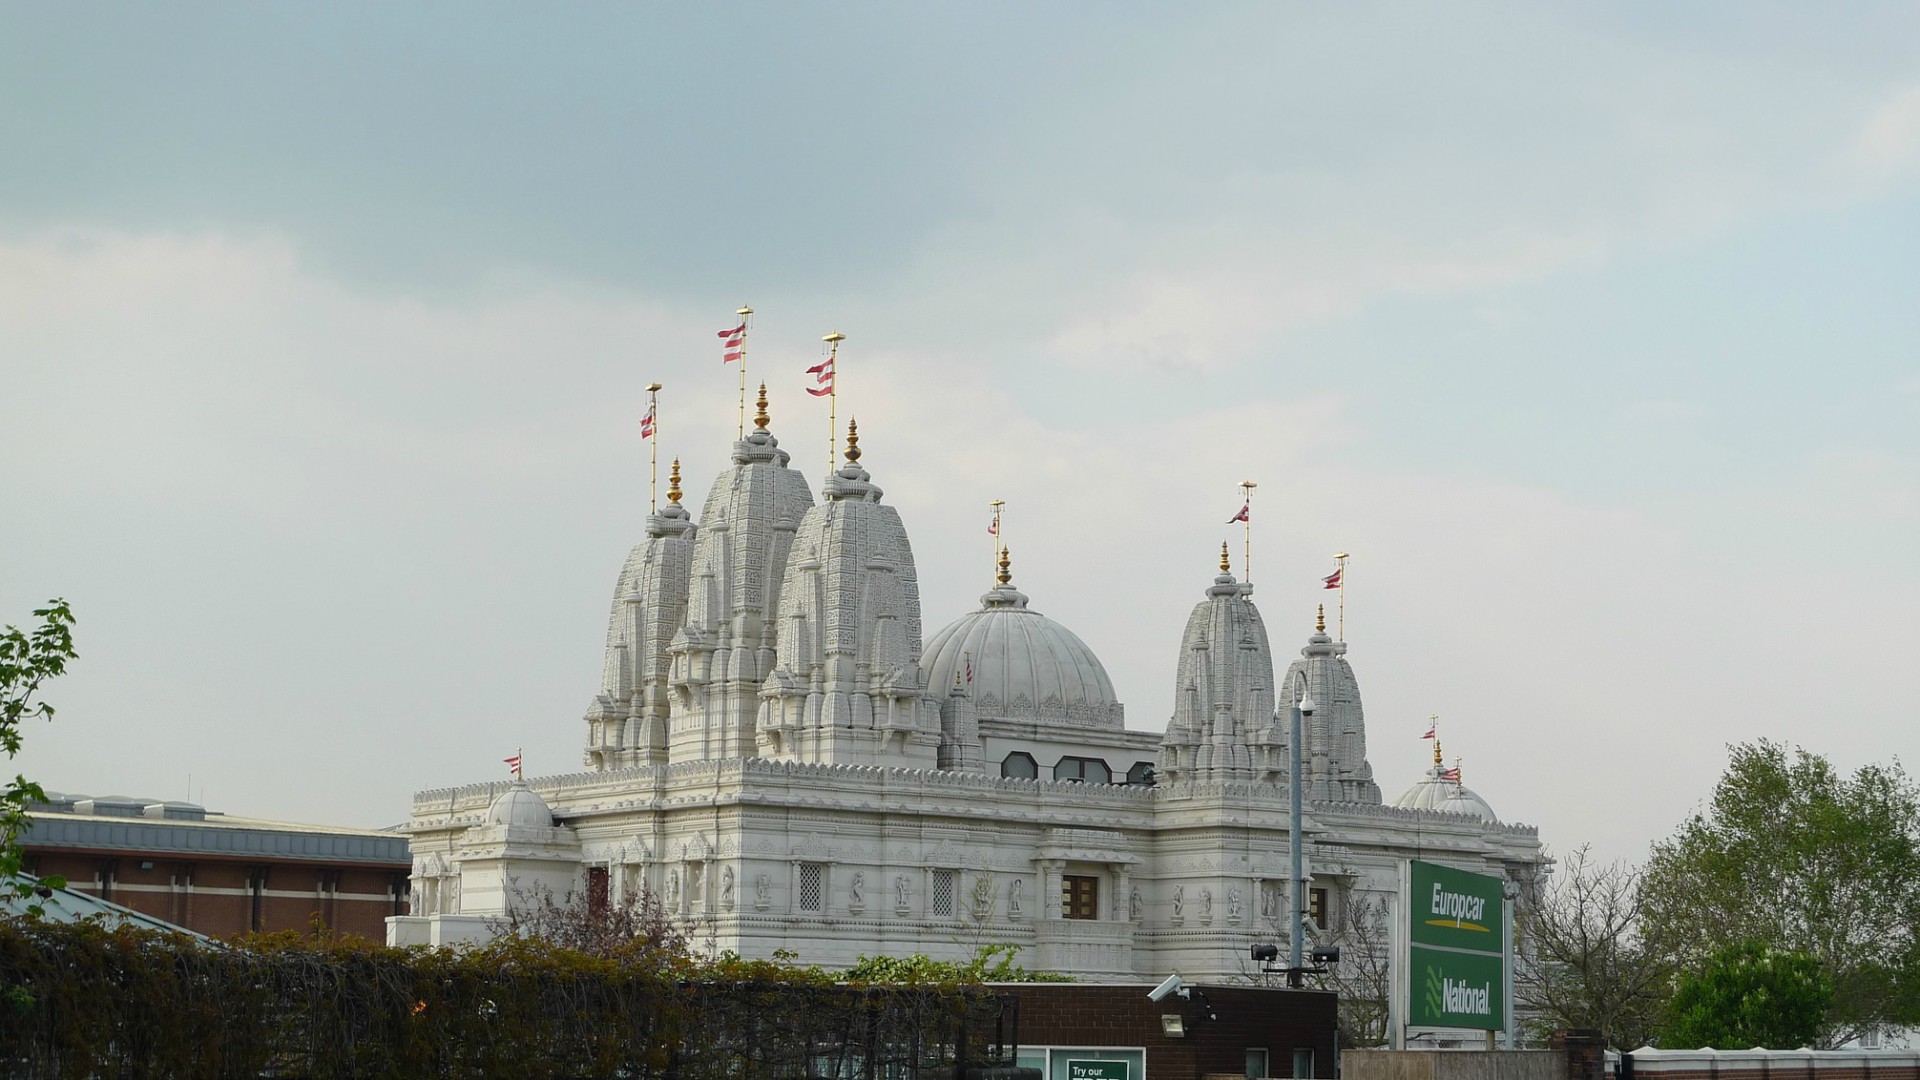 Des musulmans indiens ont aidé à la construction d'un temple hindou (Photo d'illustration:Evan Munro/Flickr/CC BY-SA 2.0)